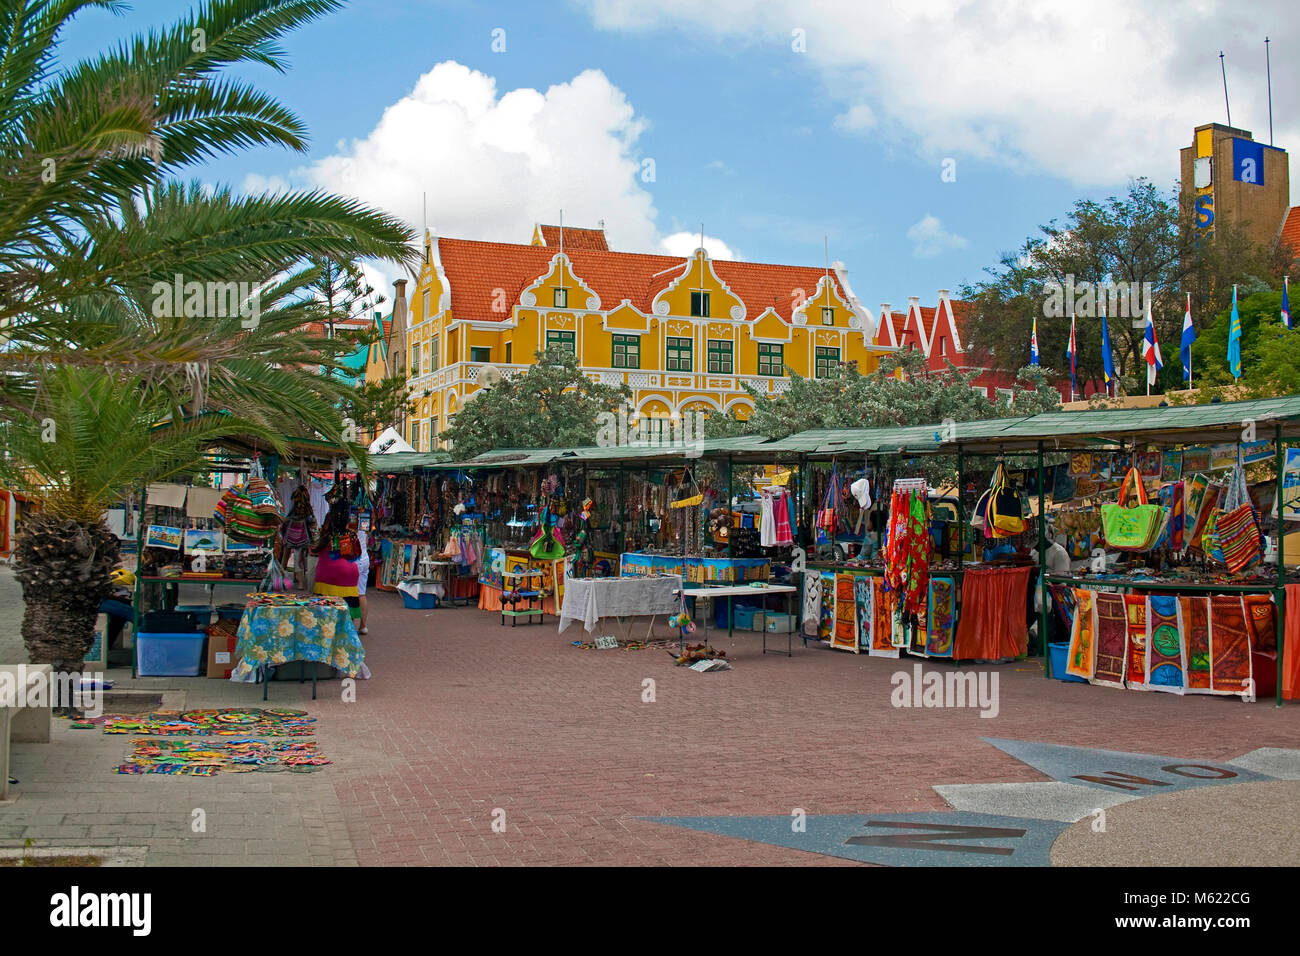 Negozio di souvenir si spegne al lungomare di Punda distretto, dietro l'edificio Punha e scambi arcade, Willemstad, Curacao, Antille olandesi, dei Caraibi Foto Stock